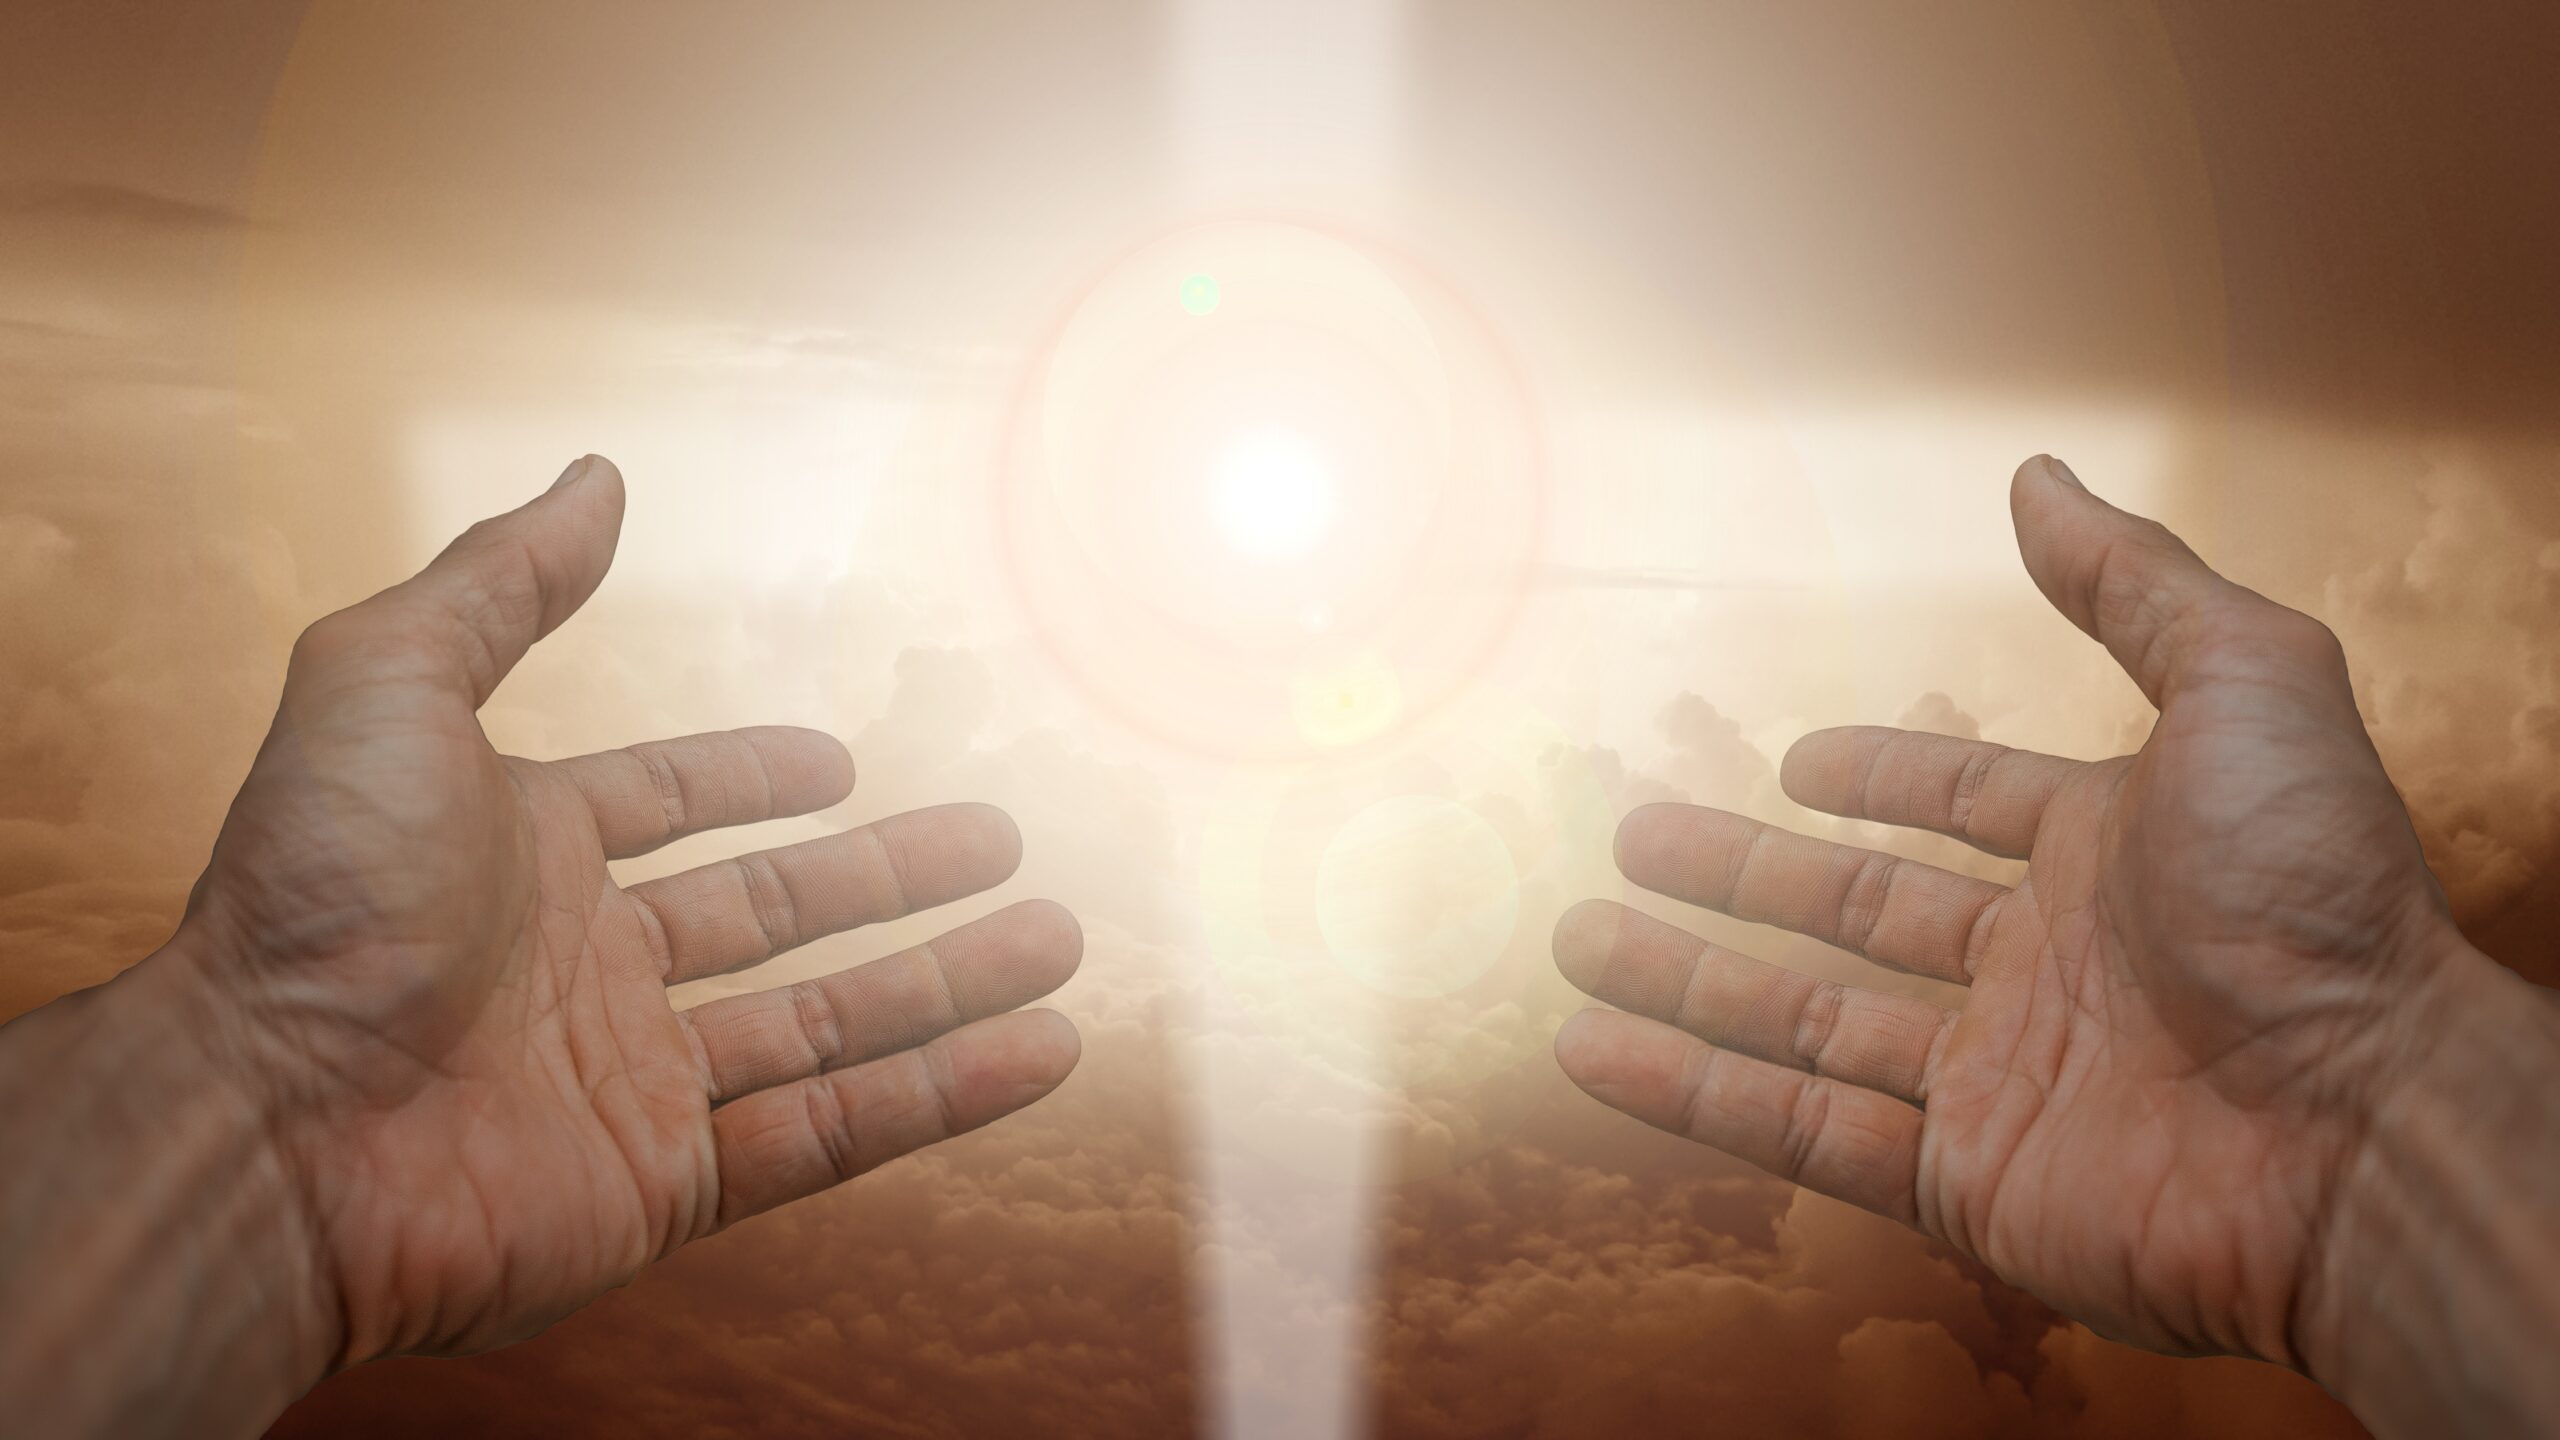 Montage photographique montrant deux mains ouvertes d'homme pointant vers une croix lumineuse